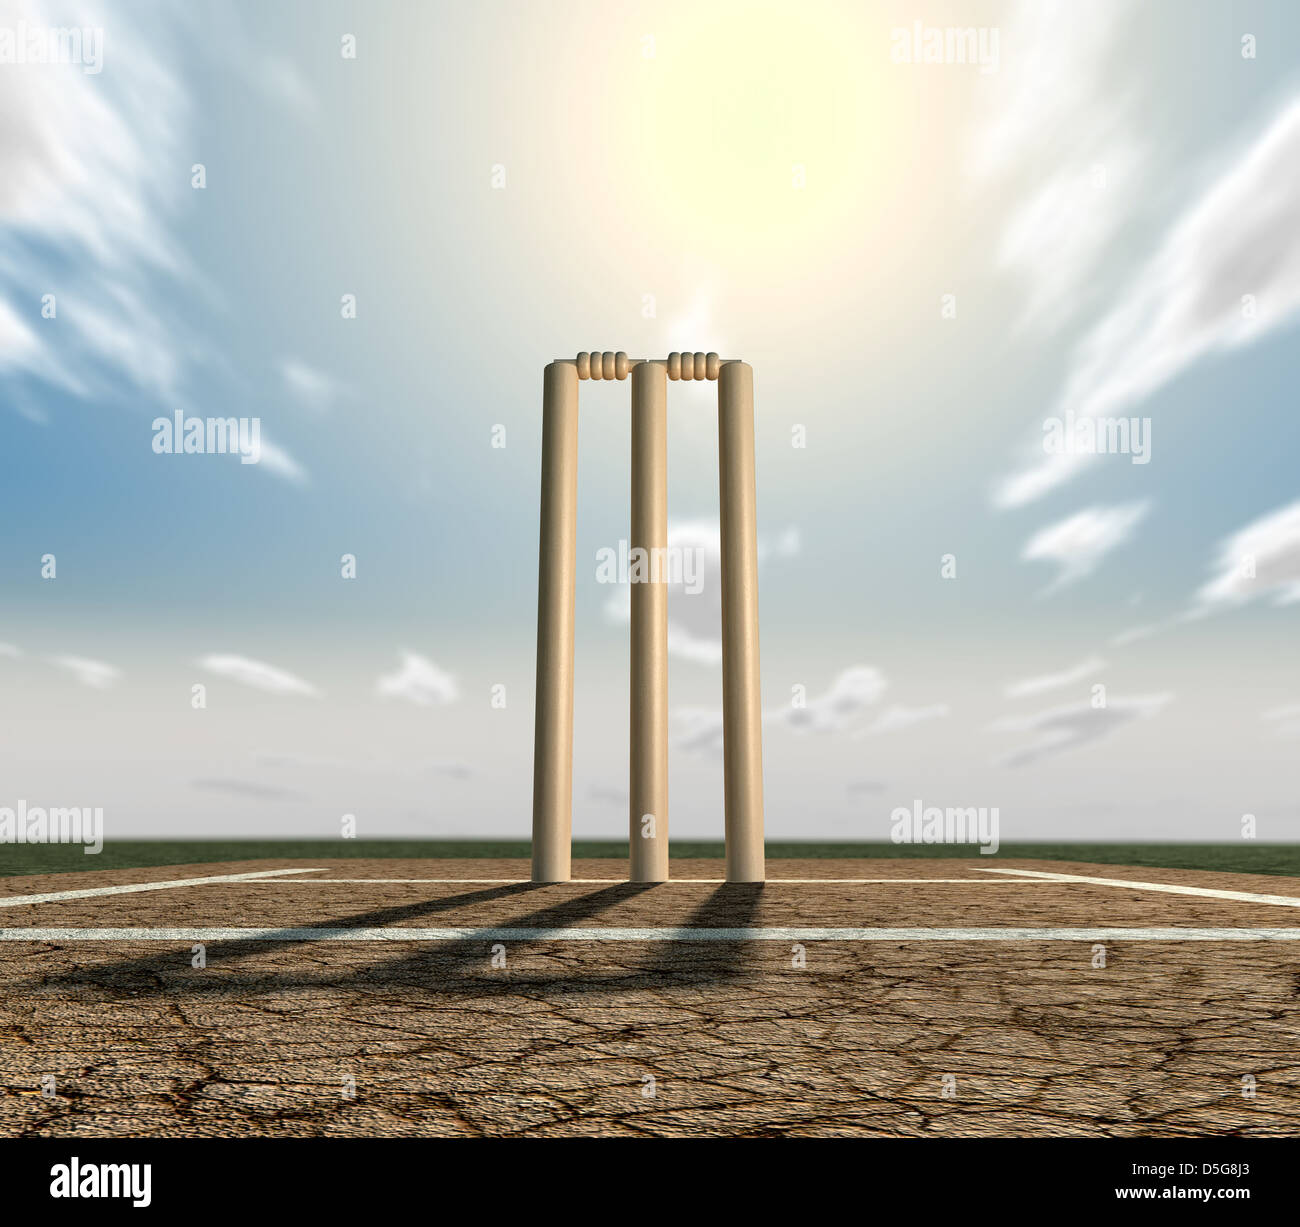 Un set di cricket wickets impostato su incrinature del campo da cricket con marcature bianche su un cielo blu sullo sfondo Foto Stock